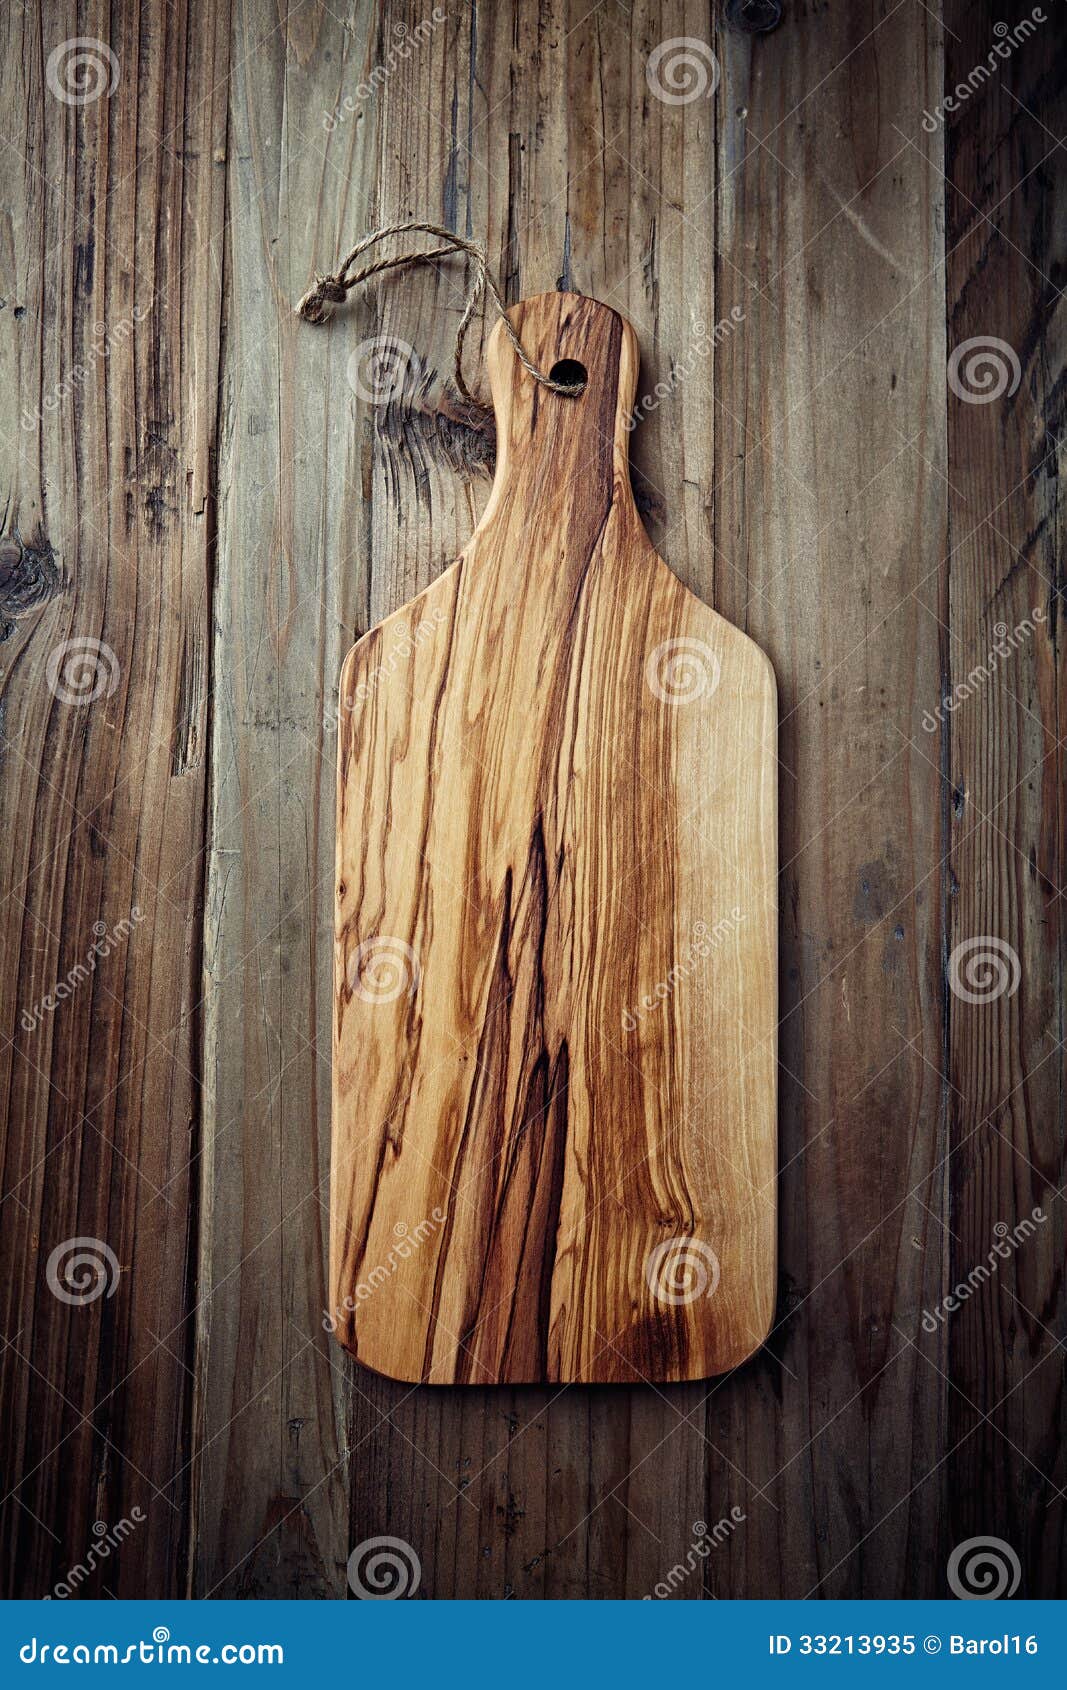 olive wood chopping board